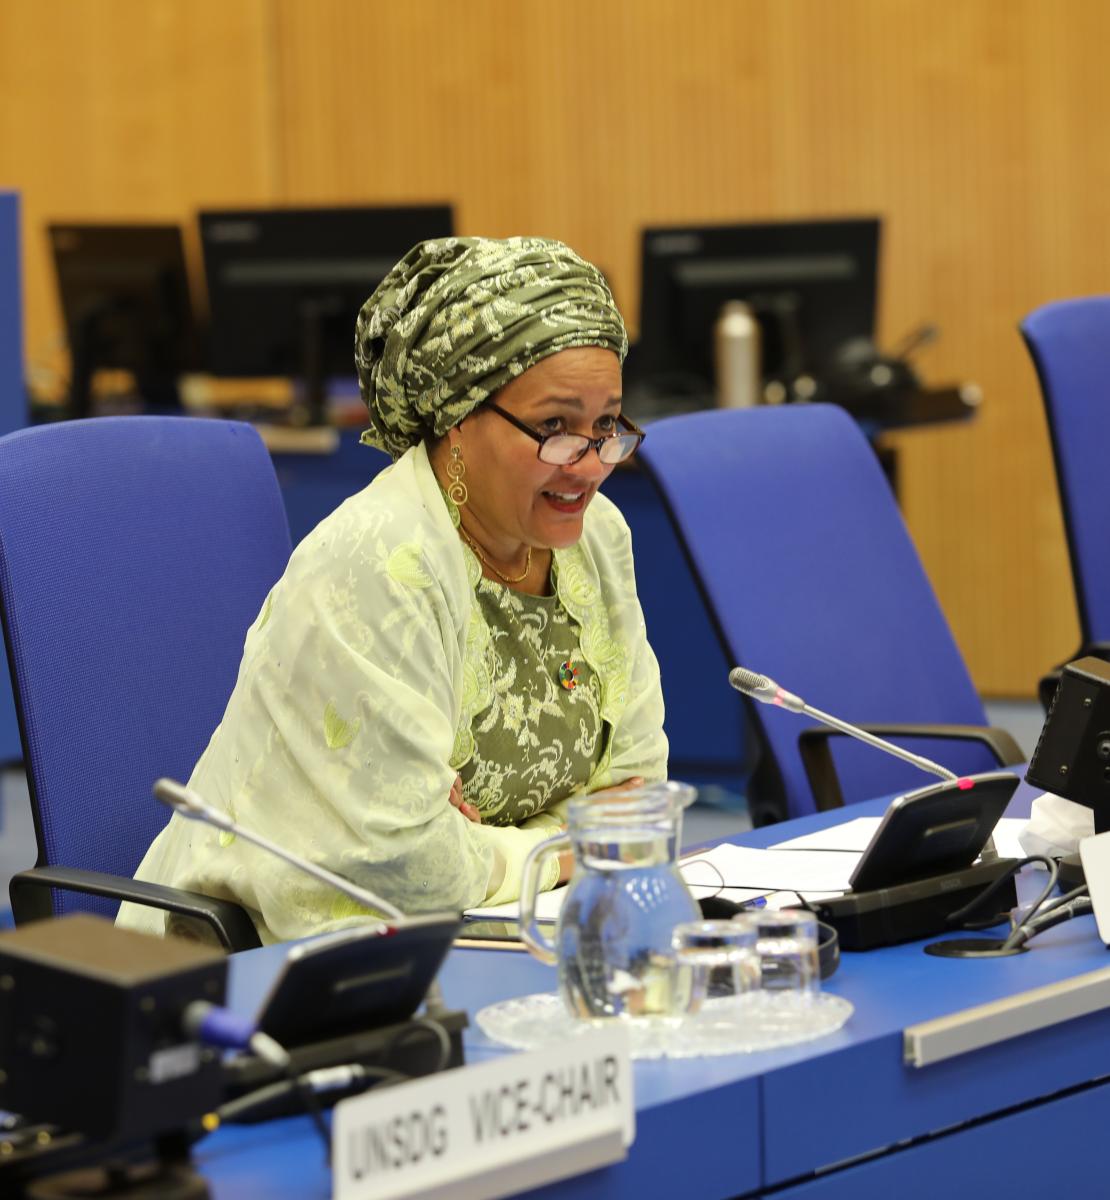 Una mujer con un chal amarillo en una silla azul habla por un micrófono en una reunión de la ONU.